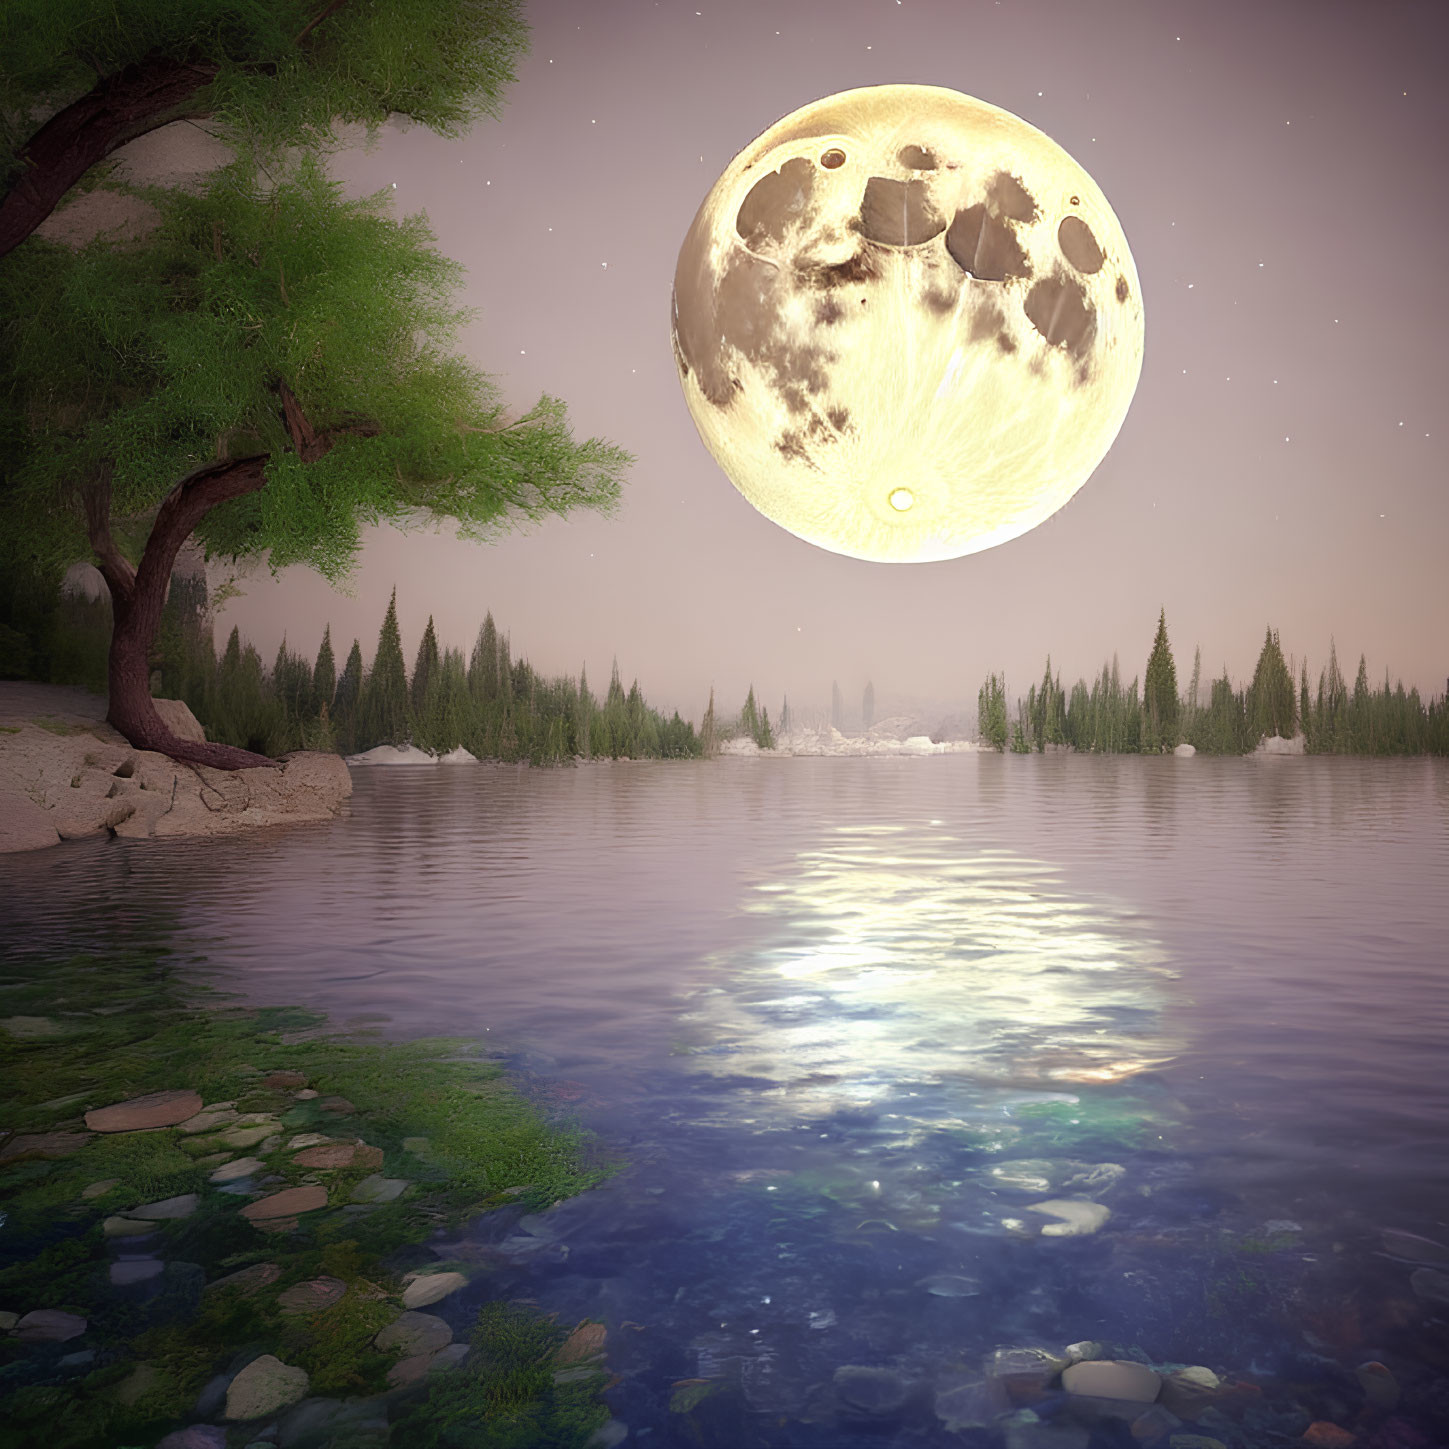 Detailed Moon Over Serene Lakeside Scene at Dusk